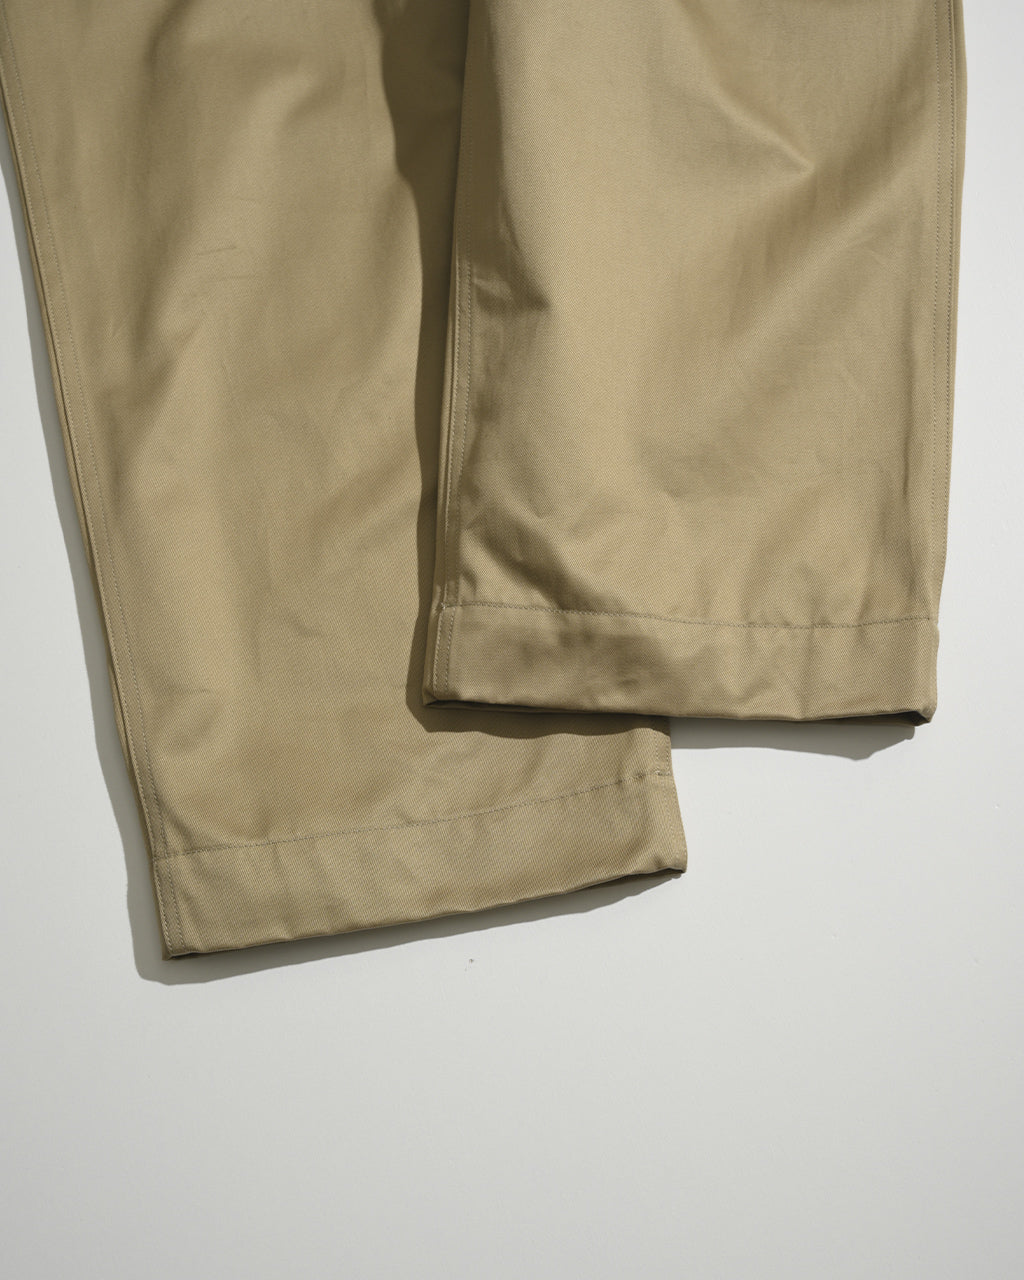 CIOTA シオタ ウエポンチノ 41 カーキ Weapon Chino Cloth Pants PTLM-130 チノパンツ【送料無料】 正規取扱店